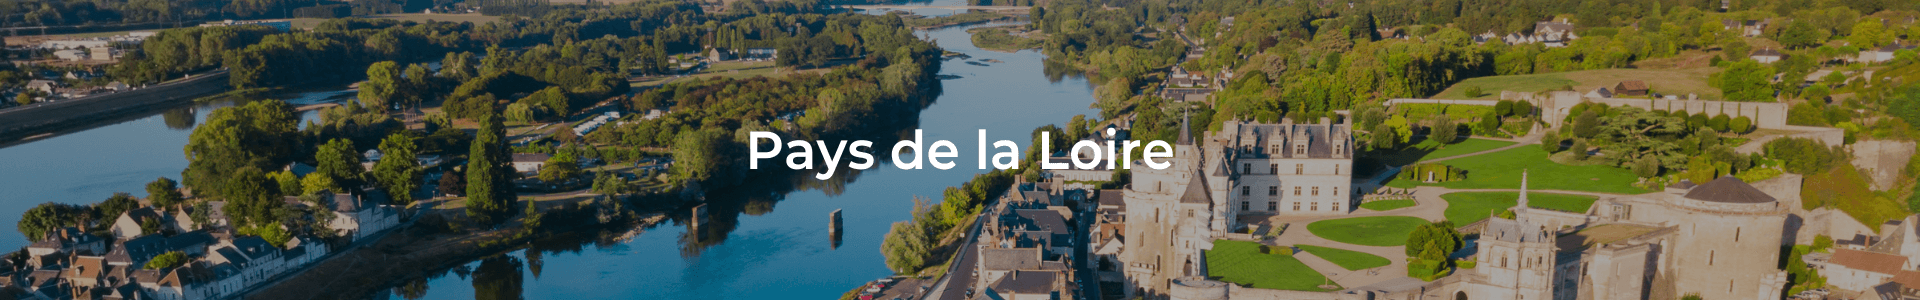 Pays de la Loire démos NDEH